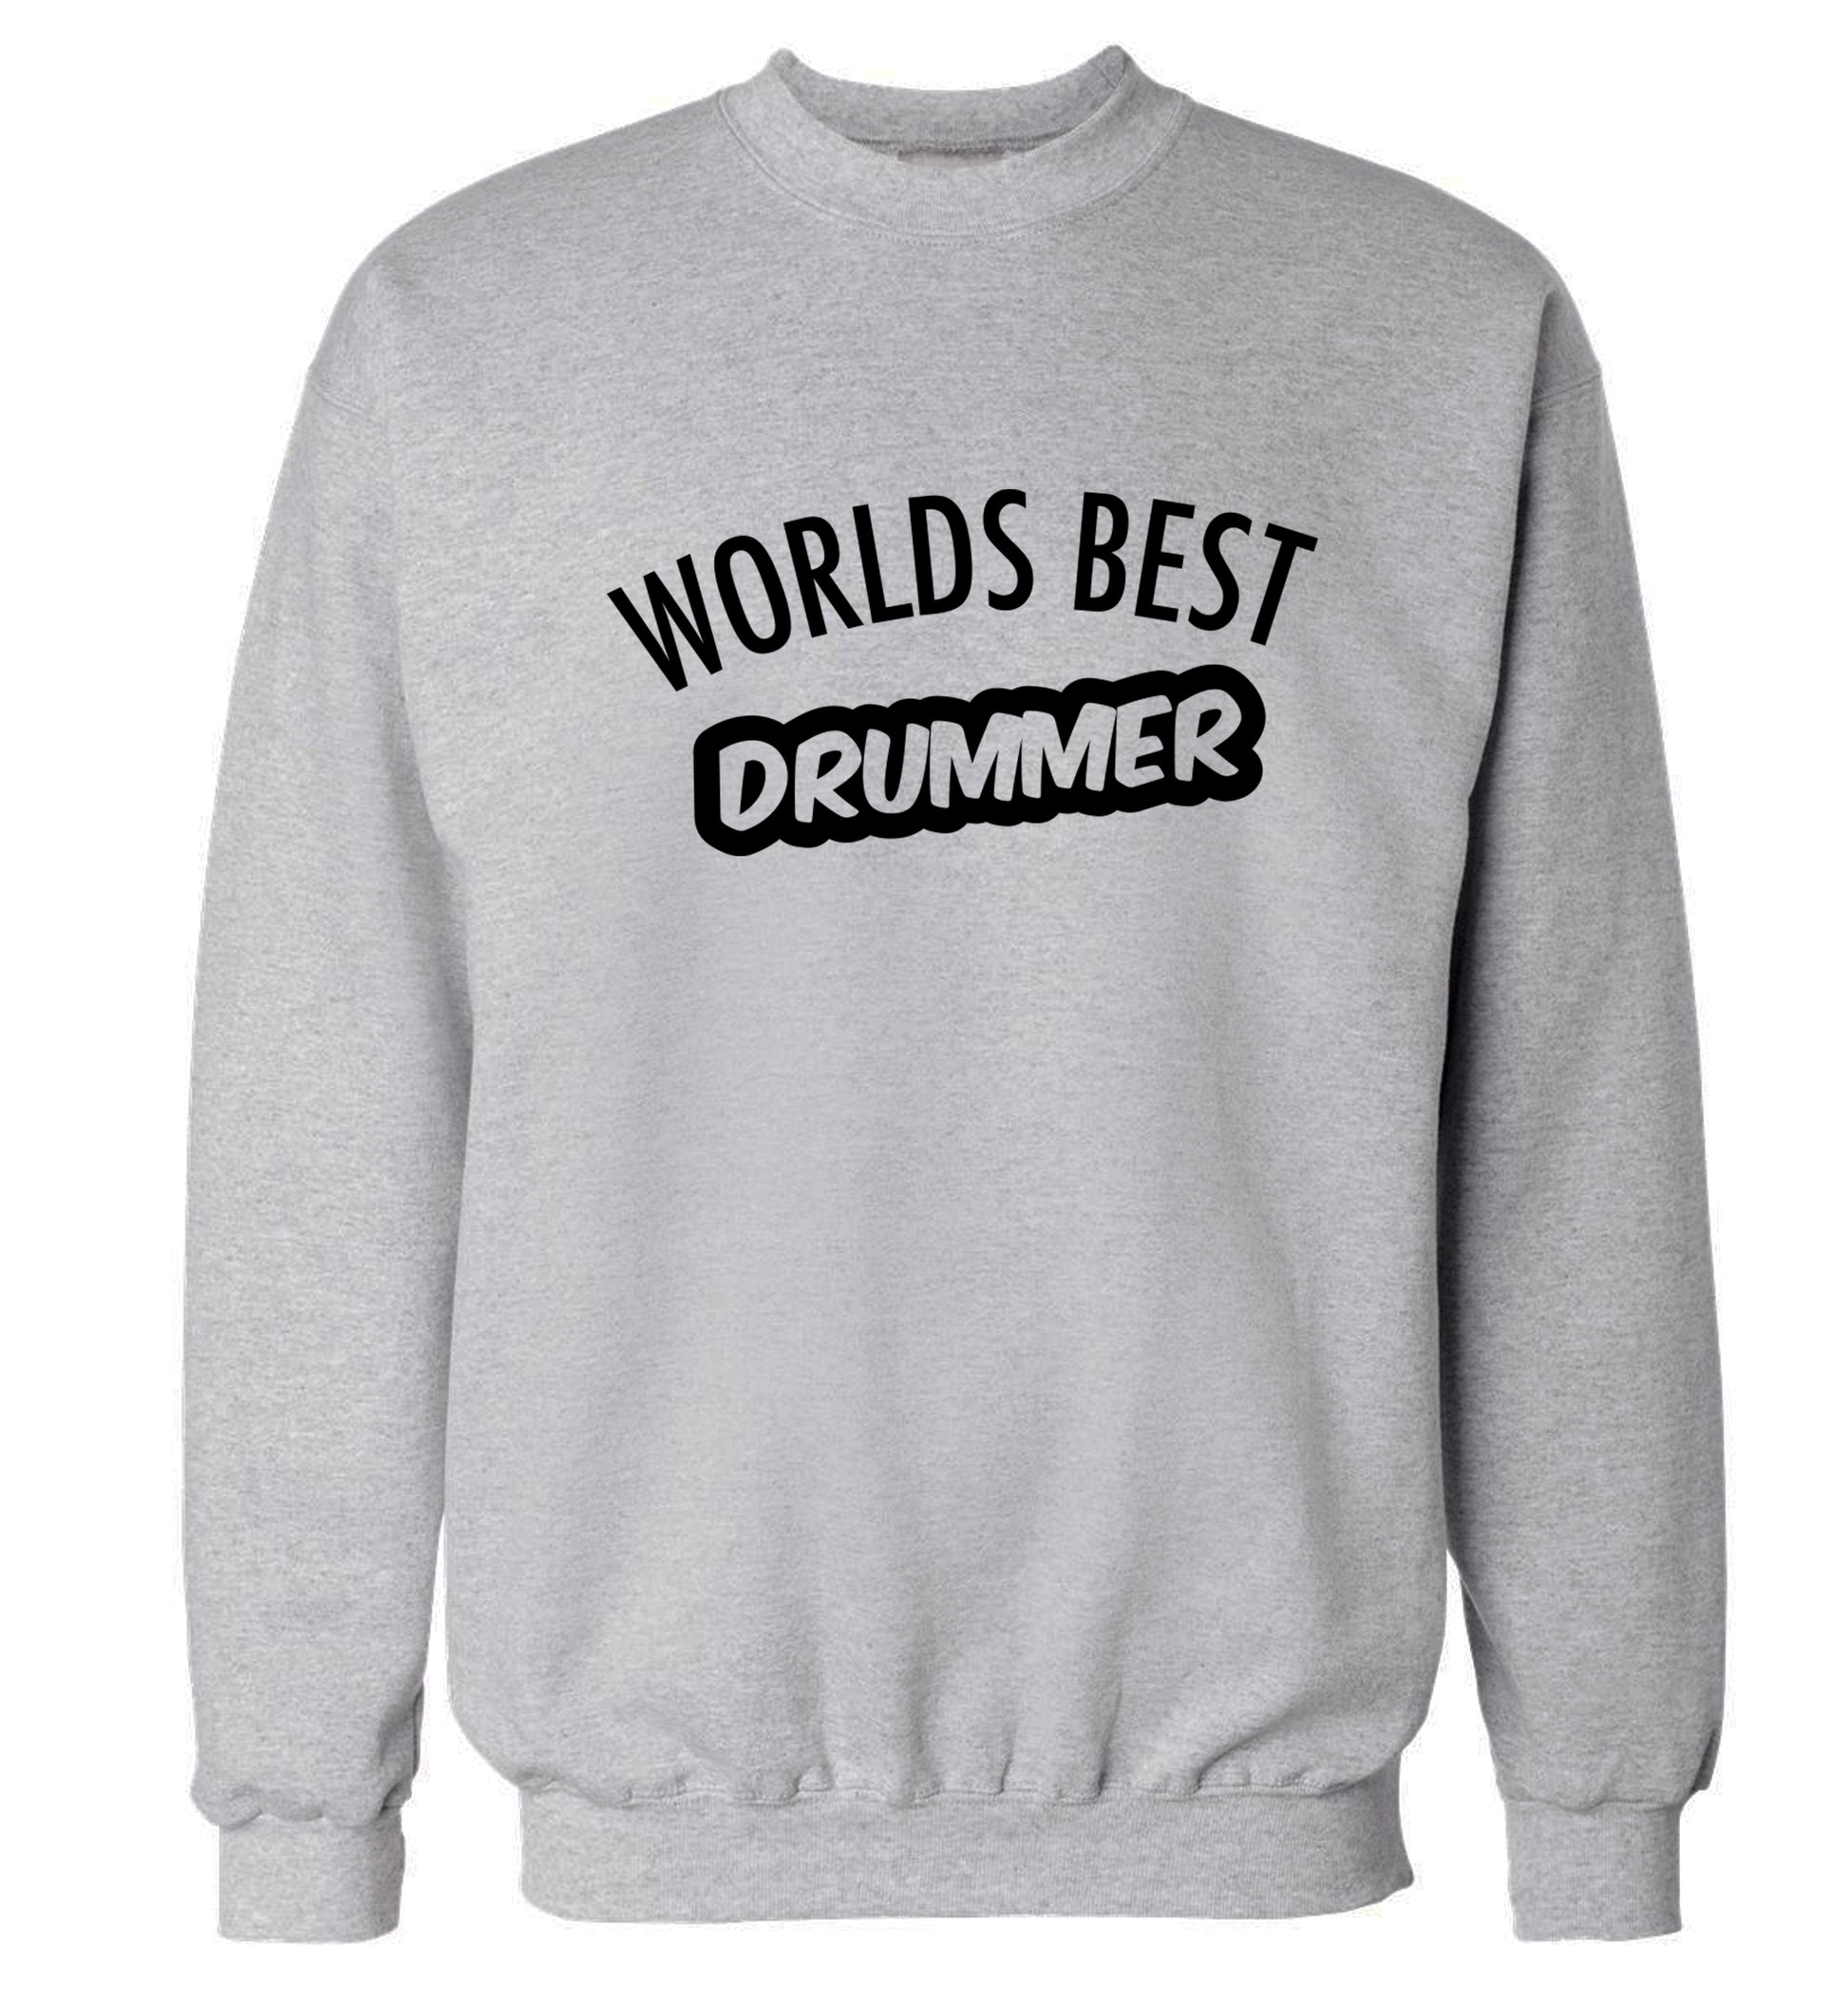 Worlds best drummer Adult's unisex grey Sweater 2XL